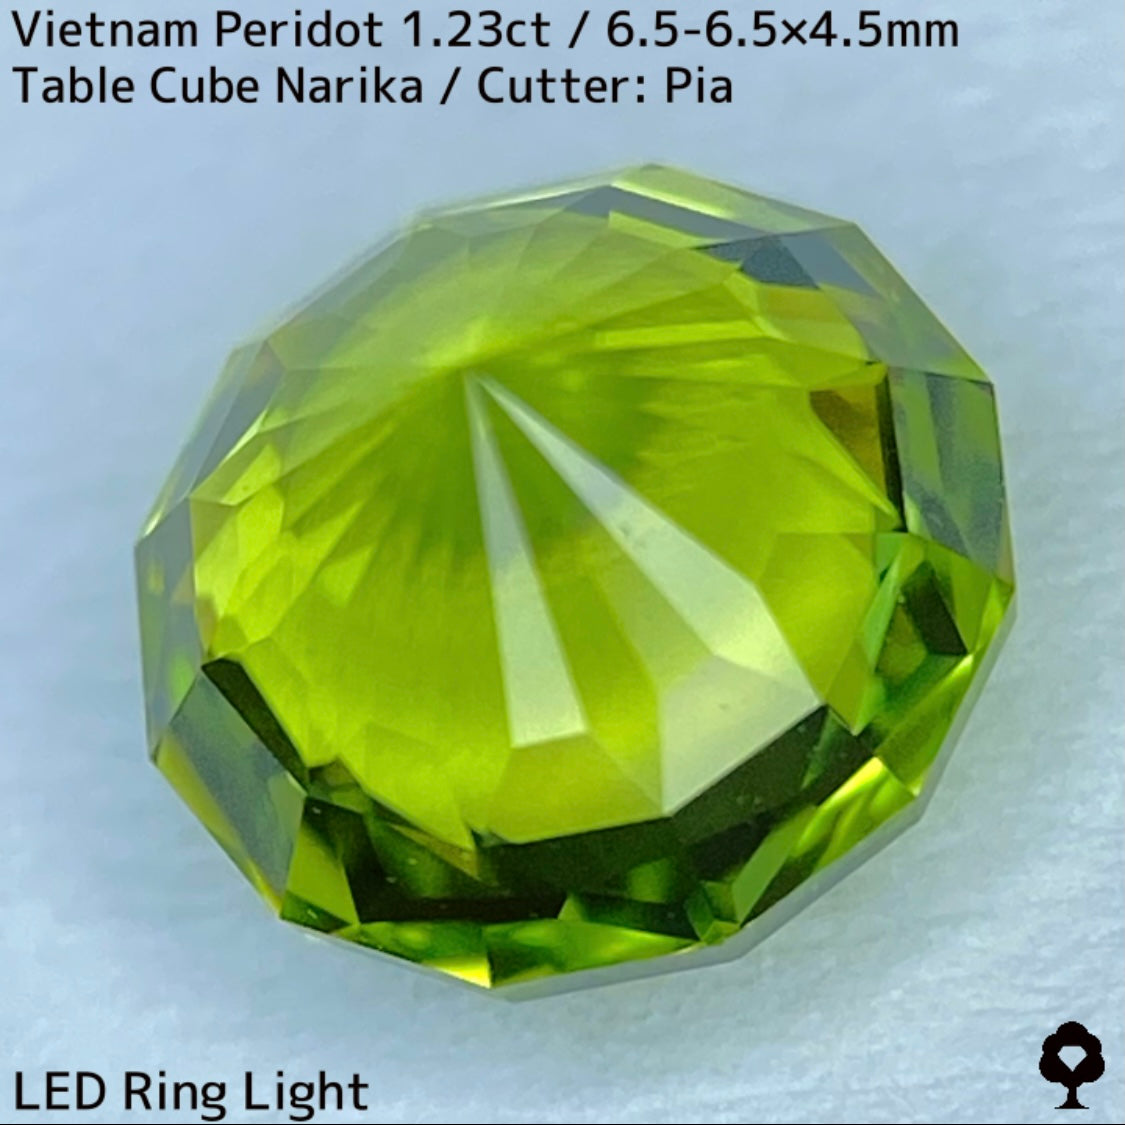 ベトナム産ペリドット1.23ct★煌めき抜群の美結晶をGTJの王道と言えるテーブルキューブナリカーに仕上げた一石